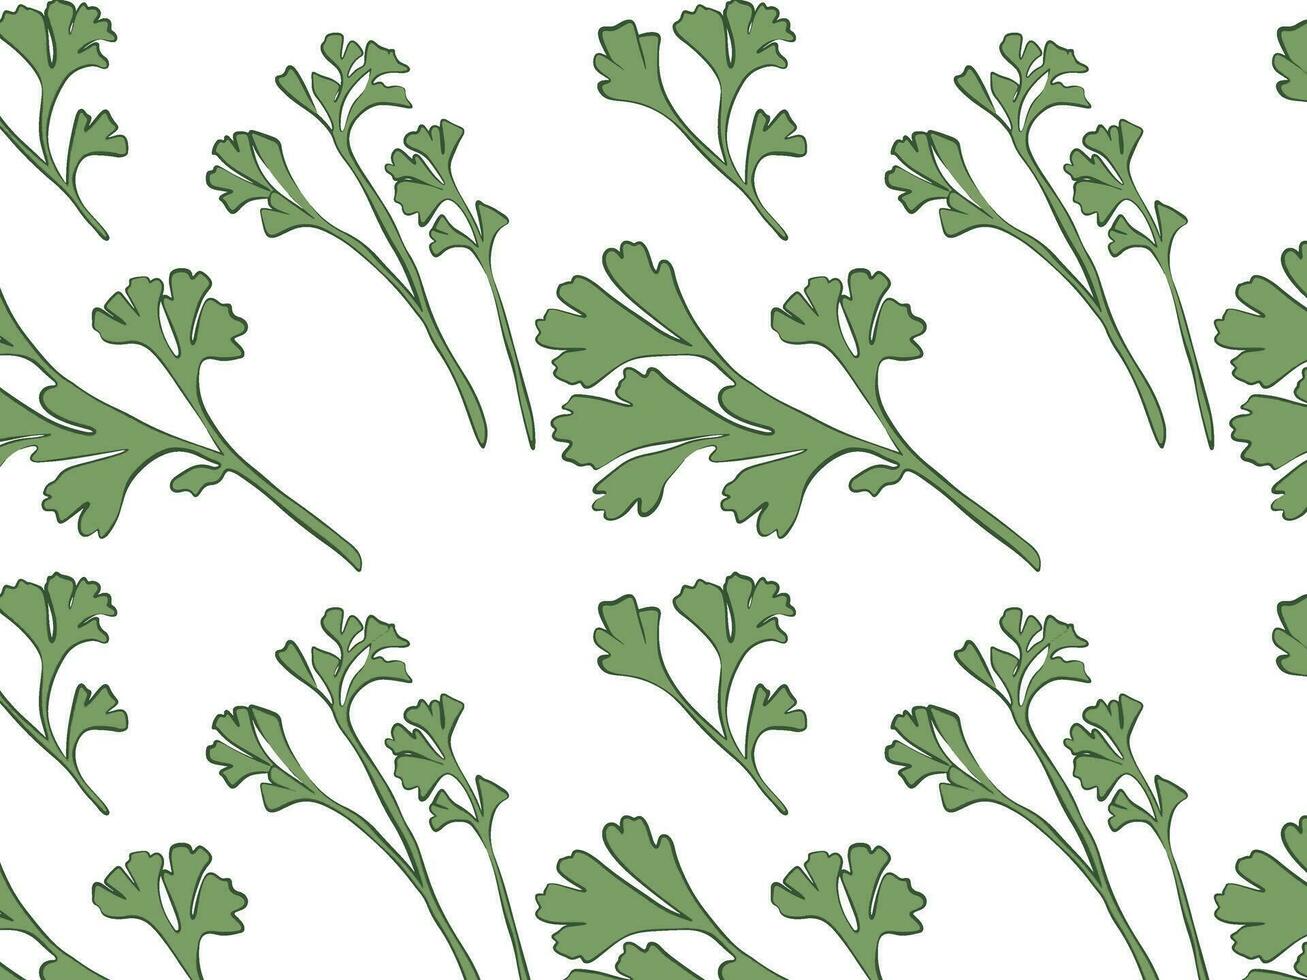 Frais légumes verts, choisir pour nourriture, modèle transparent, vecteur illustration